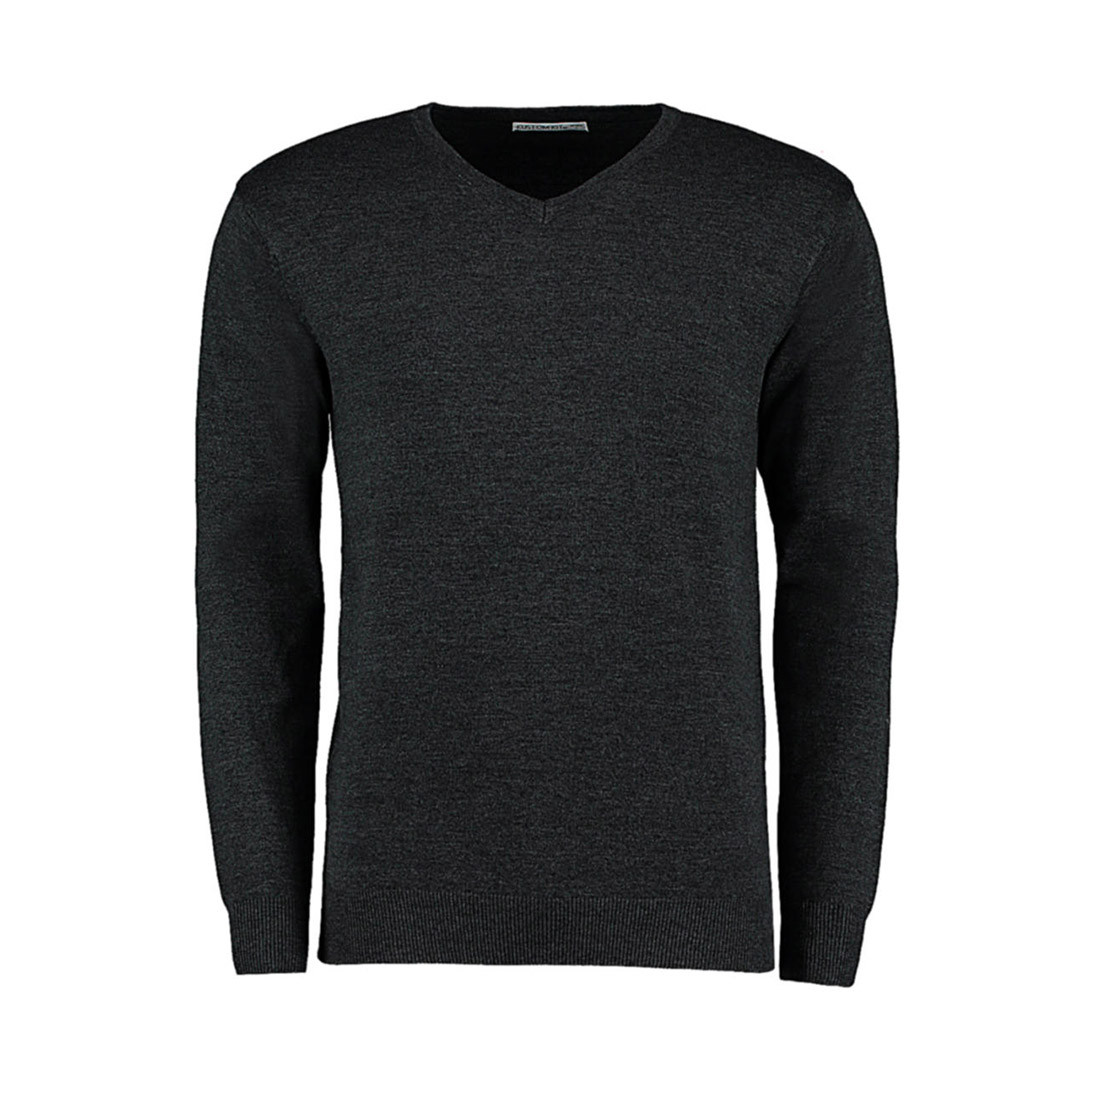 Arundel V-Neck Sweater - Les vêtements de protection